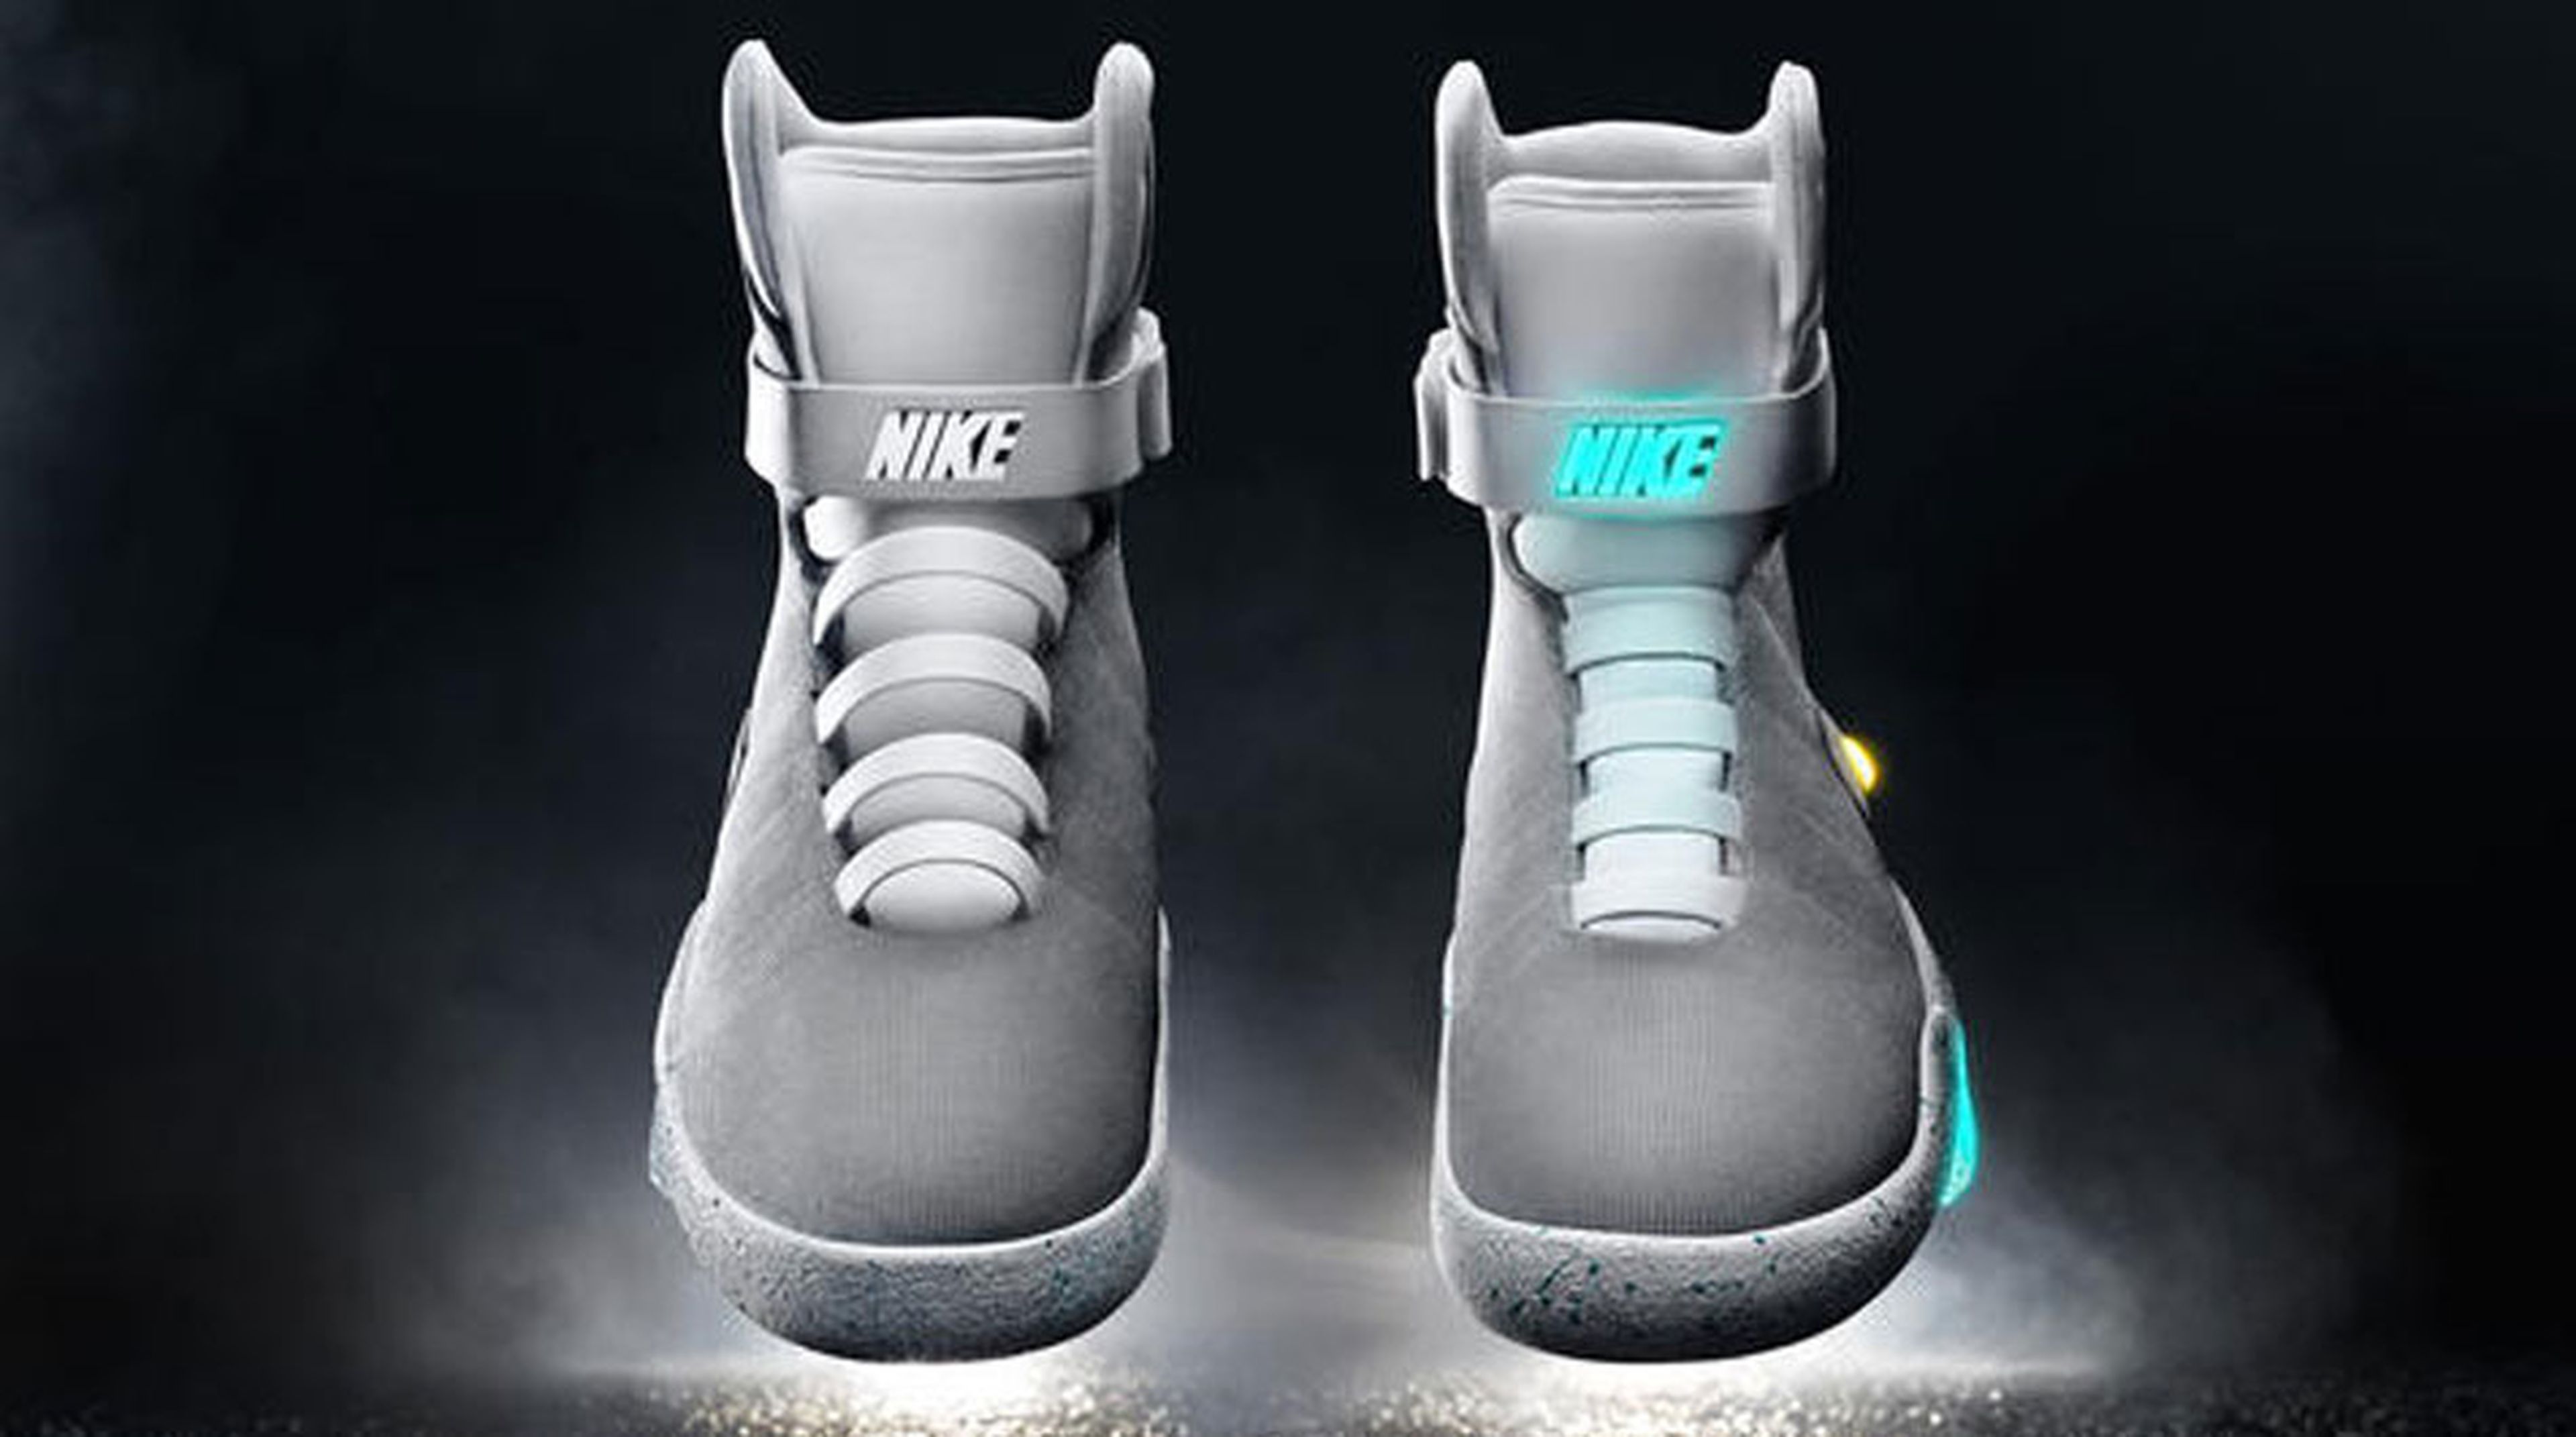 Nike lanza oficialmente zapatillas de Regreso al Futuro | Computer Hoy